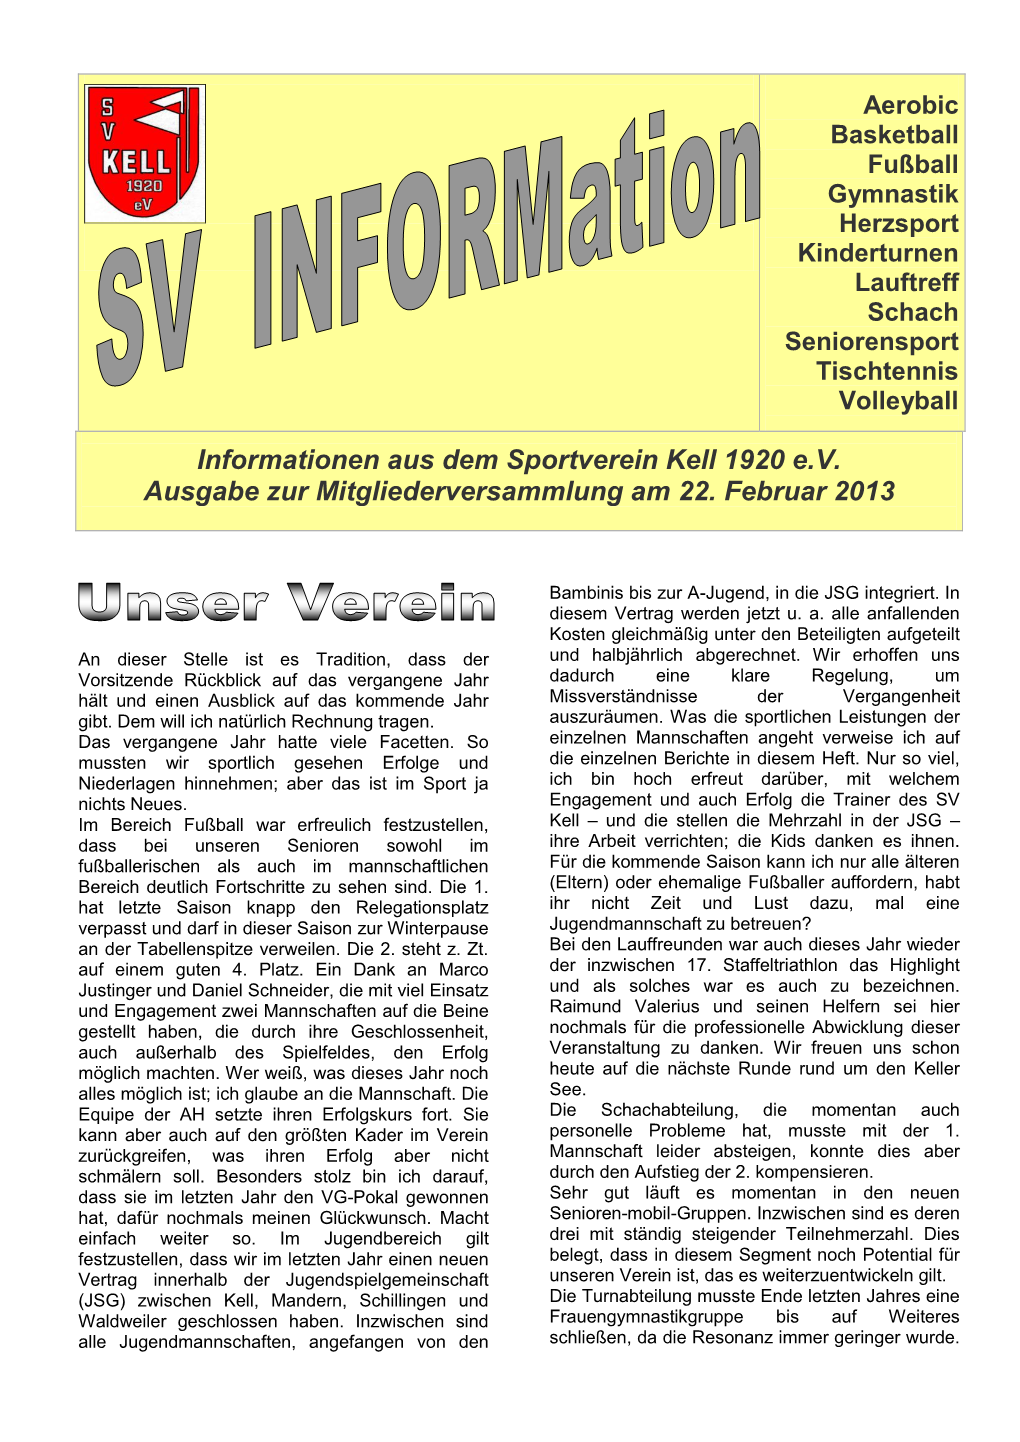 Informationen Aus Dem Sportverein Kell 1920 E.V. Ausgabe Zur Mitgliederversammlung Am 22. Februar 2013